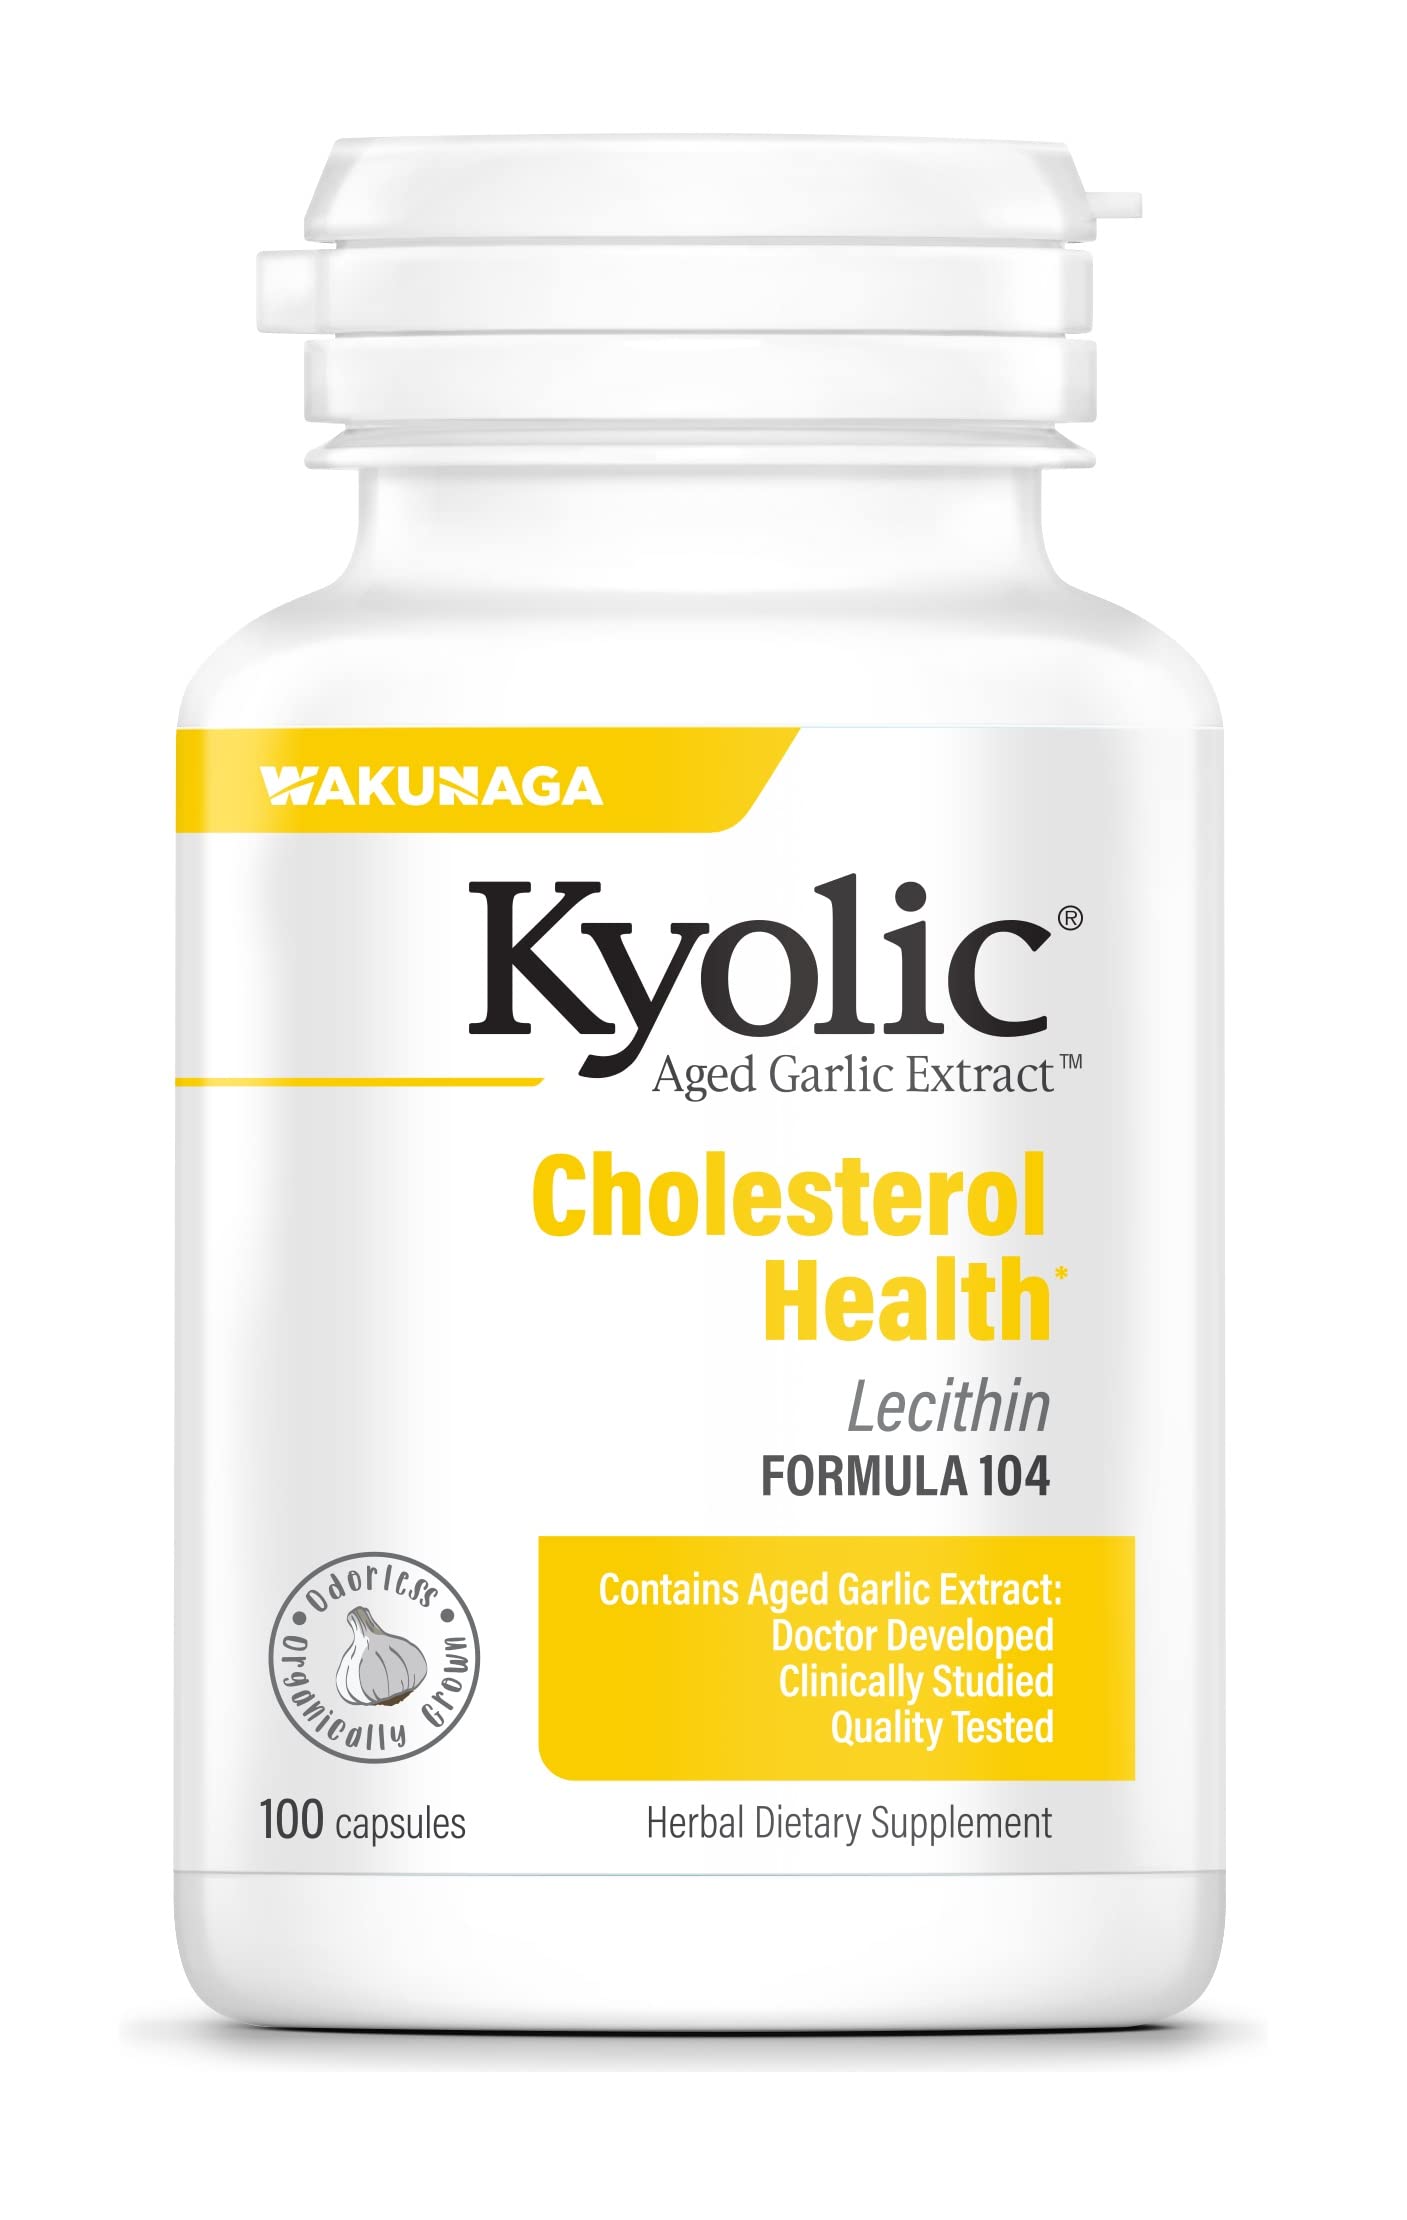 Kyolic Aged Garlic Extract Formula 104 Cholesterol Health, 100 Capsules (Packaging May Vary)